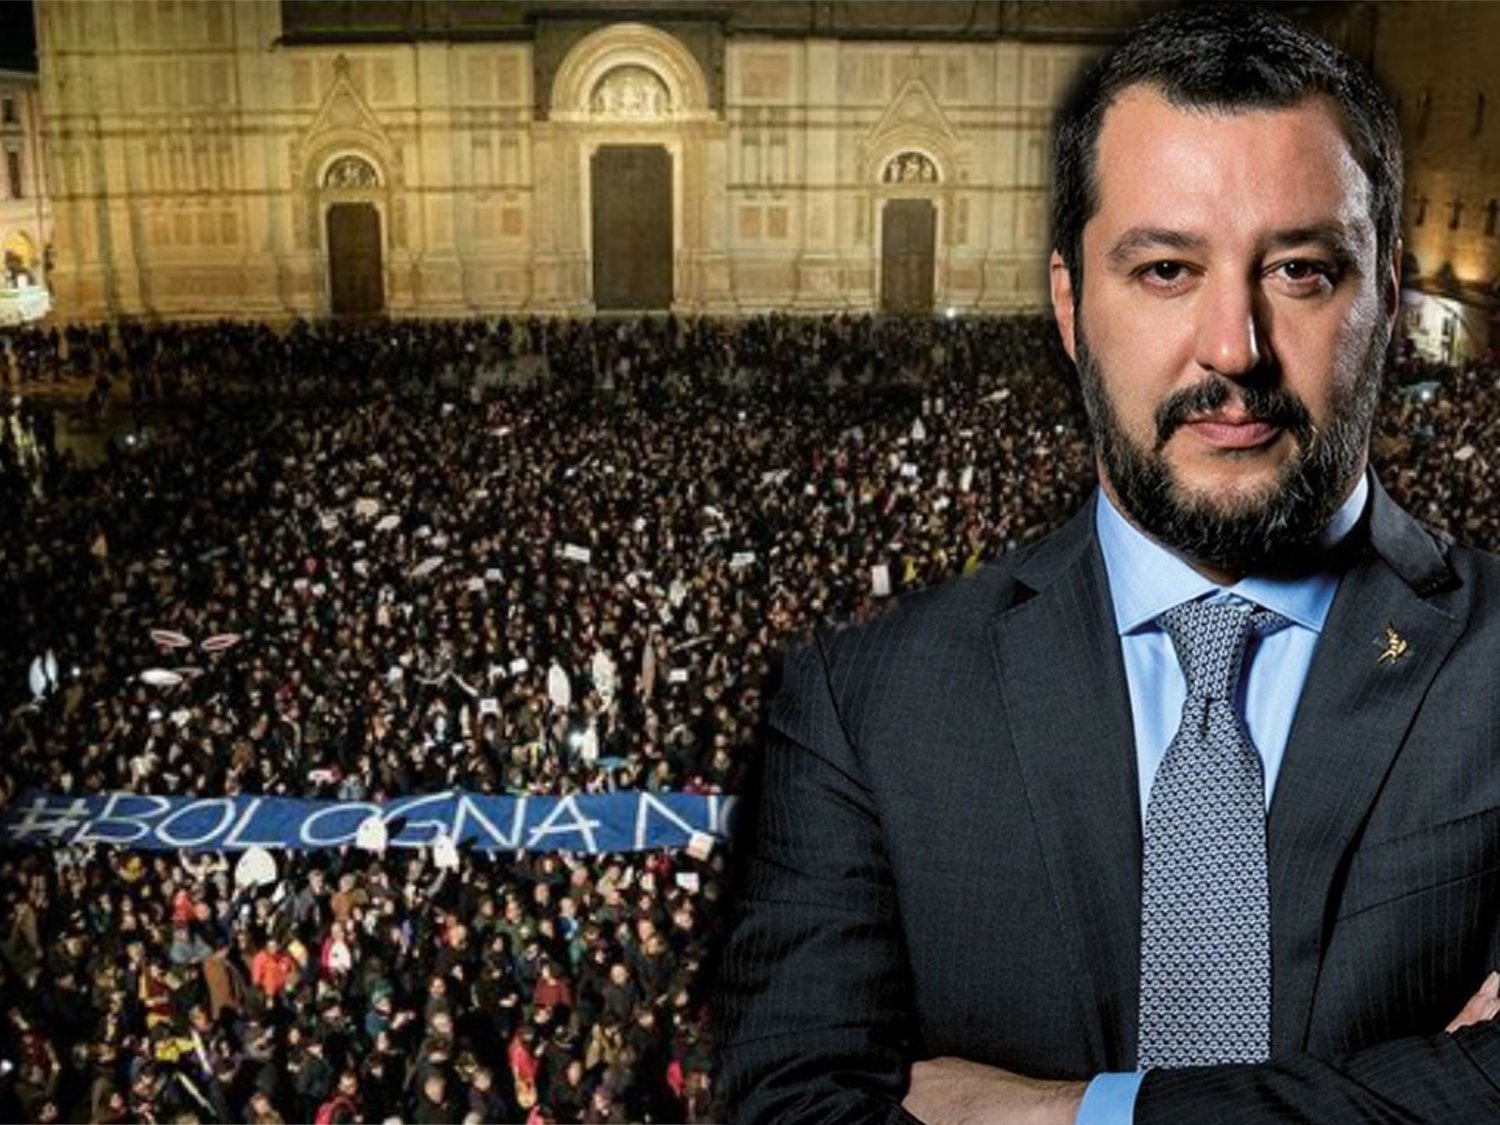 El mar de "sardinas" en Italia que busca deshacerse del populismo de Salvini